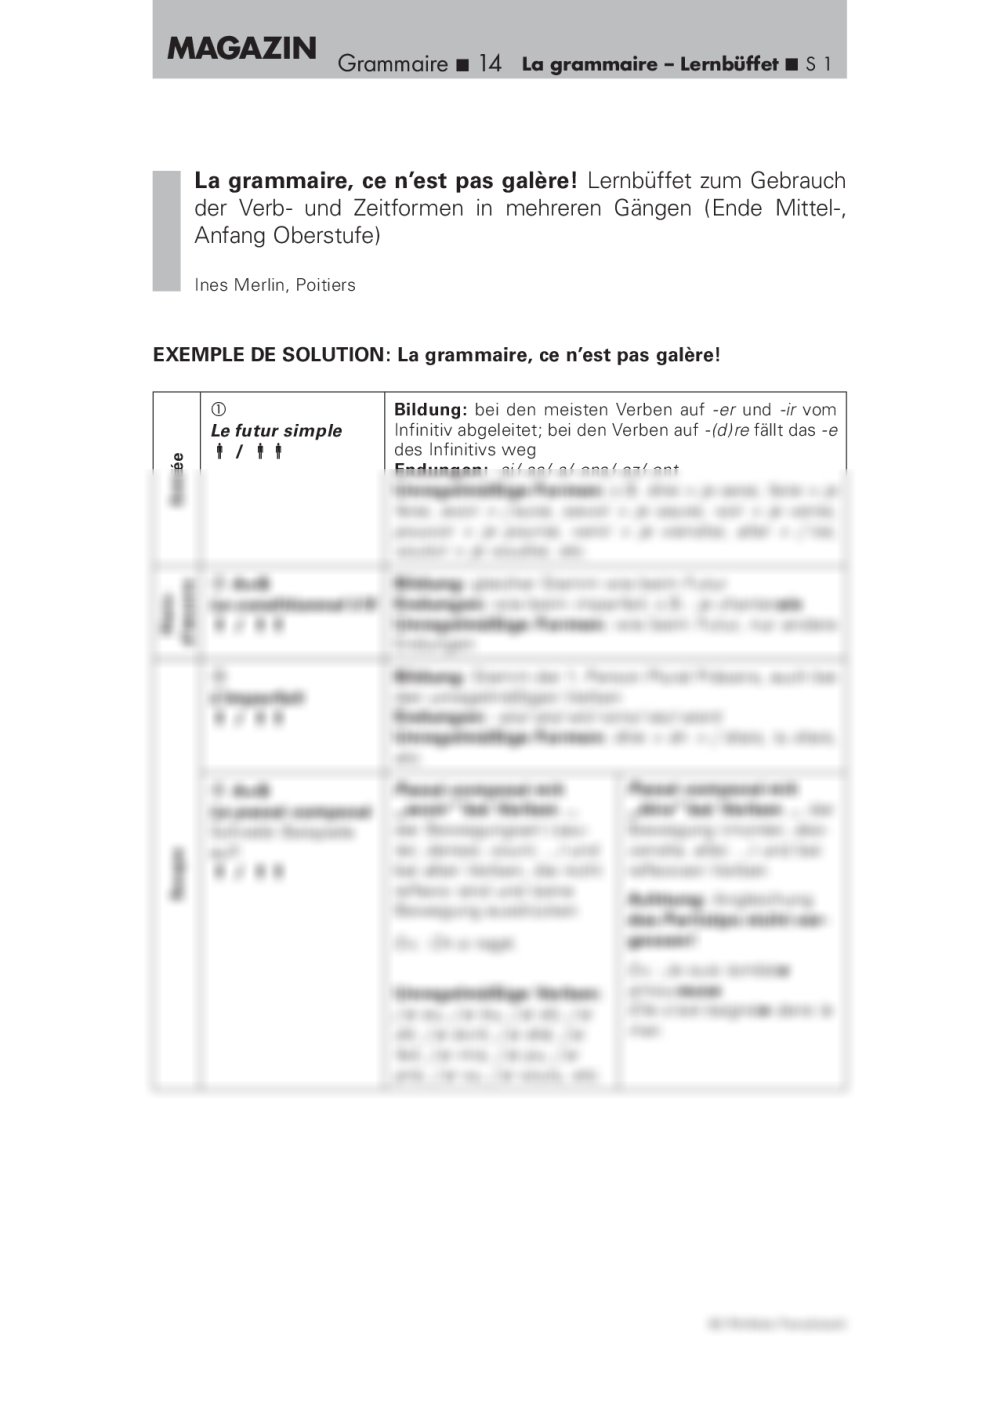 Ein Lernbüffet zum Gebrauch der Verb- und Zeitformen in mehreren Gängen - Seite 1